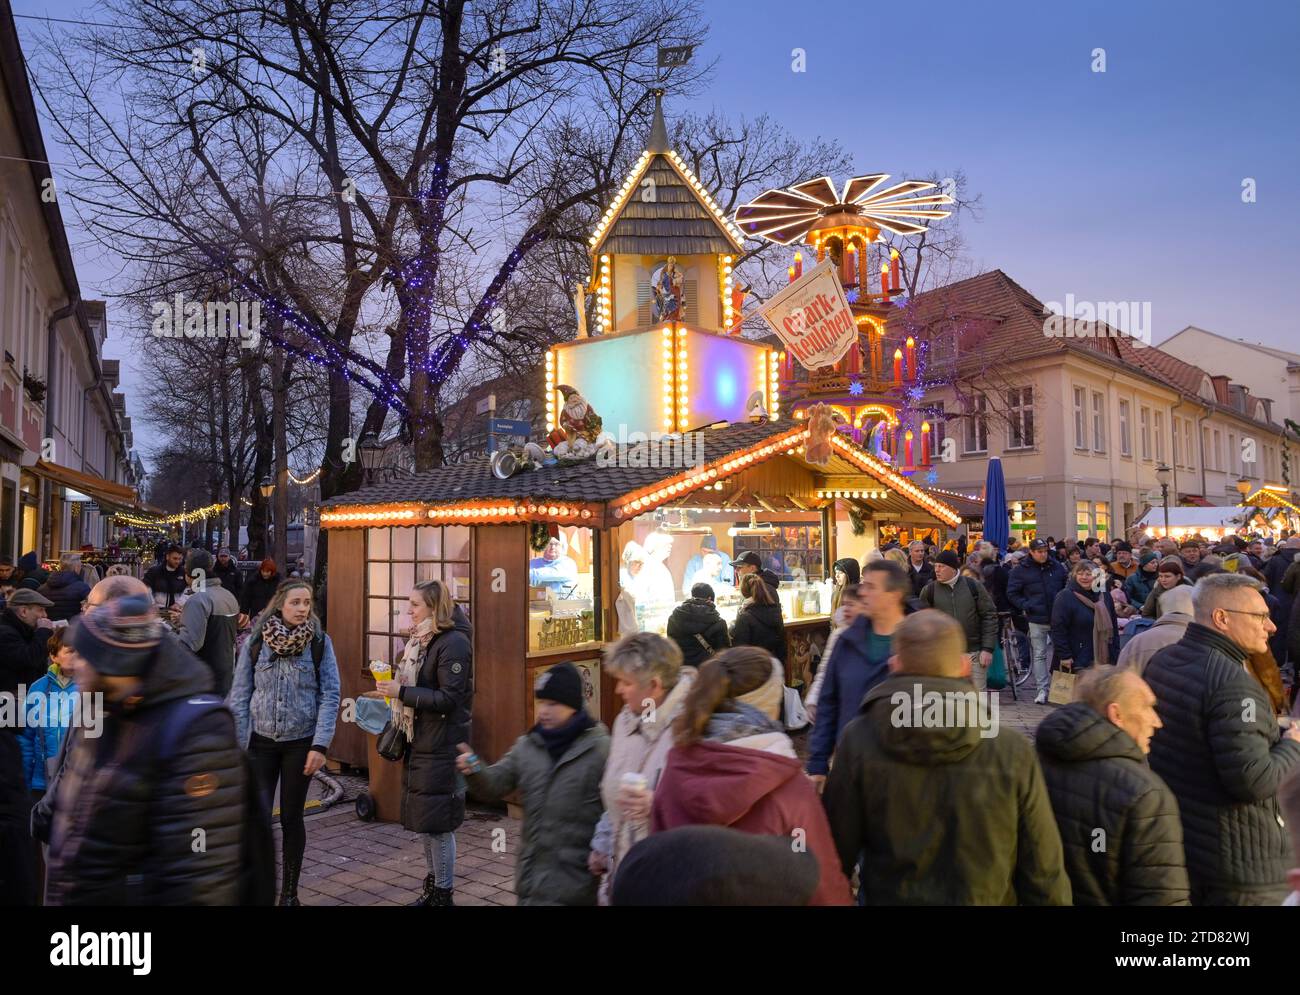 Weihnachtsmarkt Blauer Lichterglanz, Brandenburger Straße, Potsdam, Brandenburg, Deutschland Stock Photo